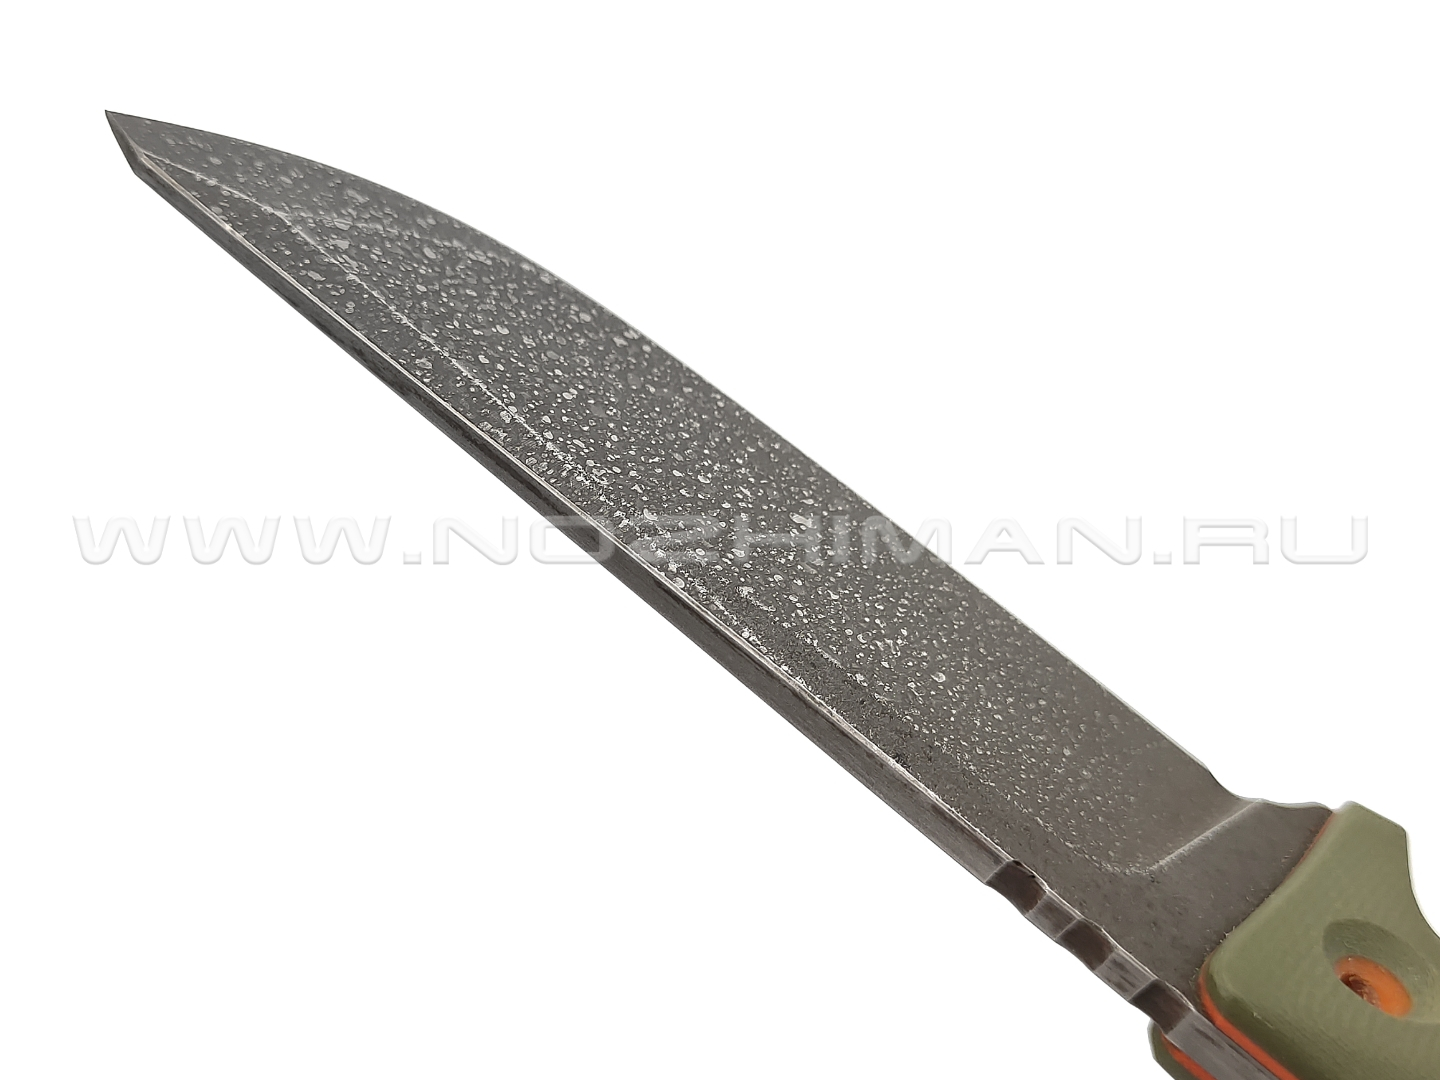 Dyag knives нож Model09_2 сталь N690, рукоять G10 olive